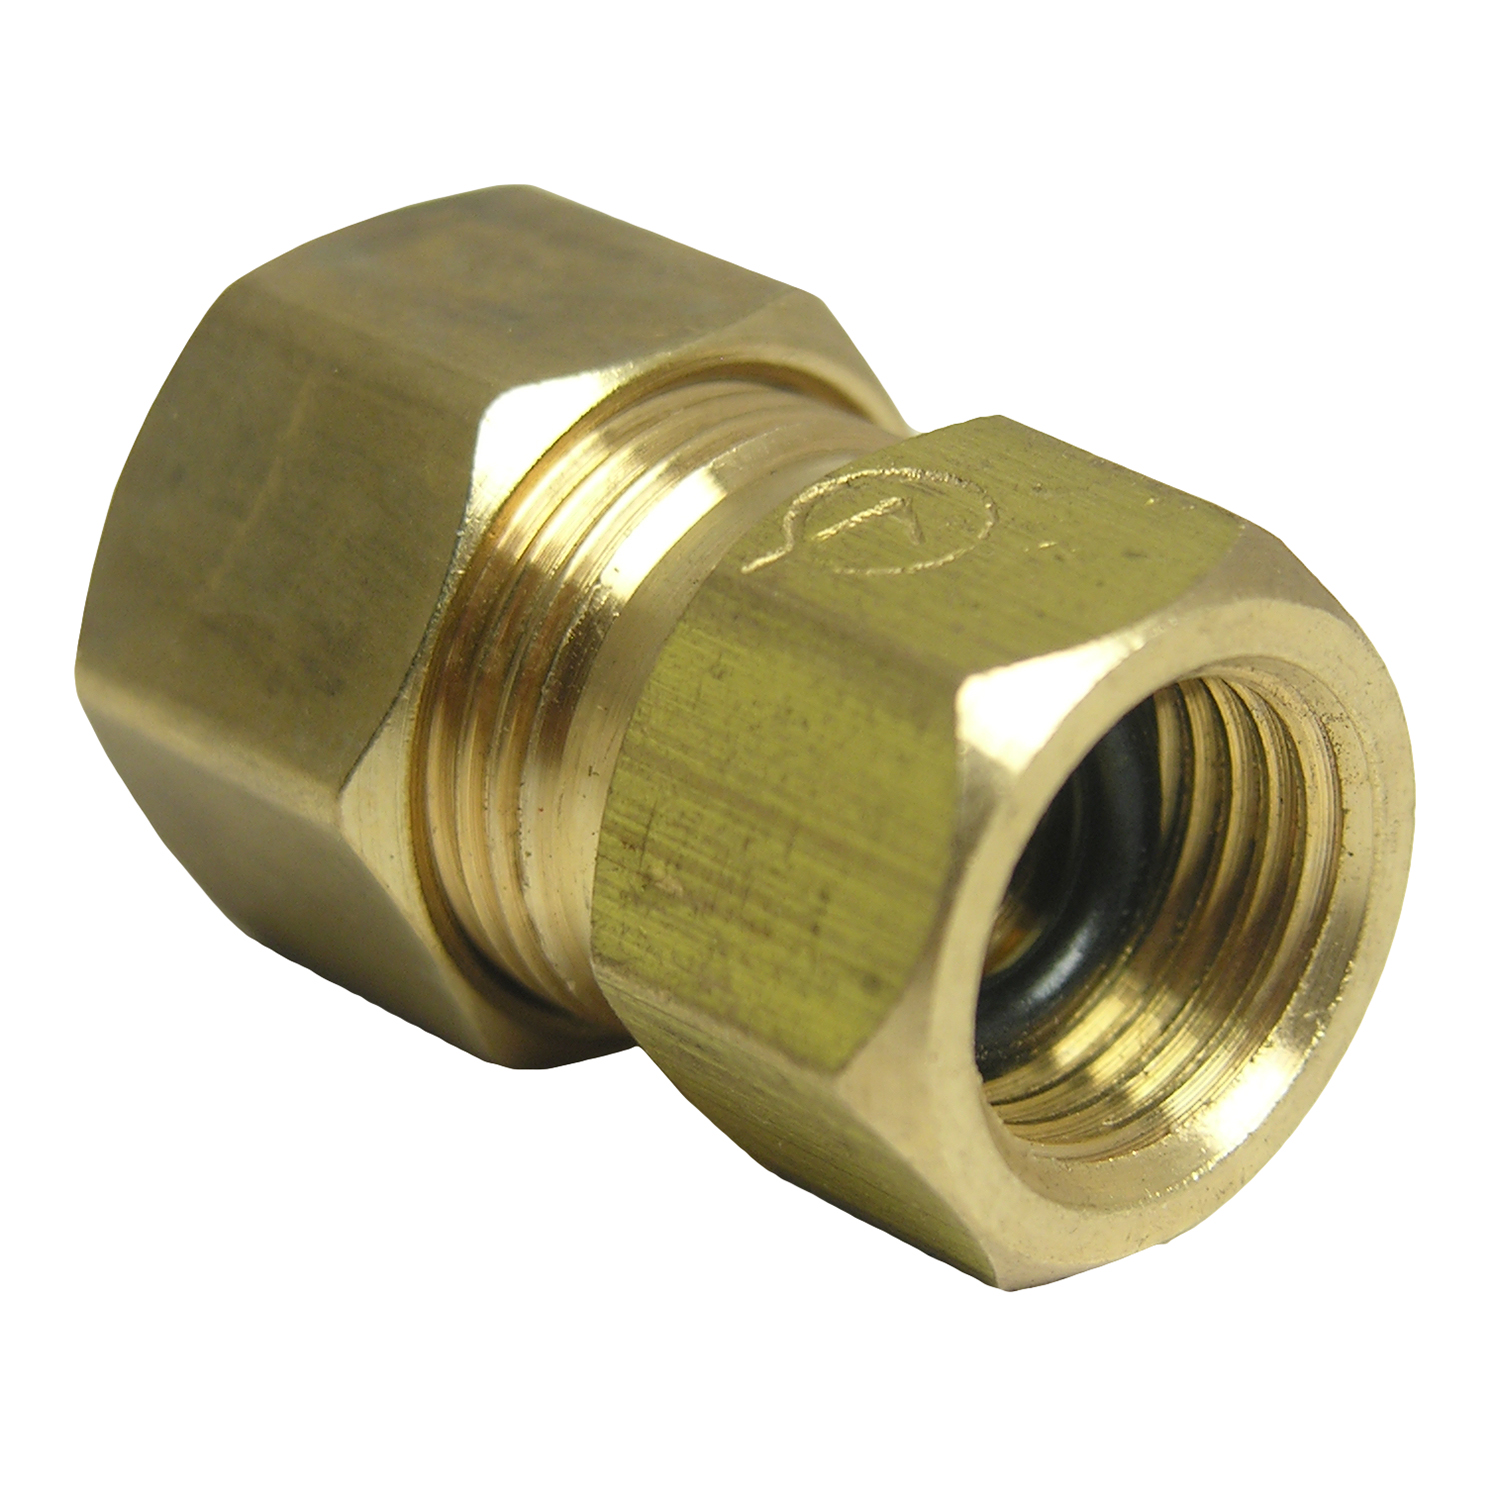 17-6759 Pipe Adapter, 1/4 x 3/8 in, Female Compression x Male Compression, Brass, 200 psi Pressure